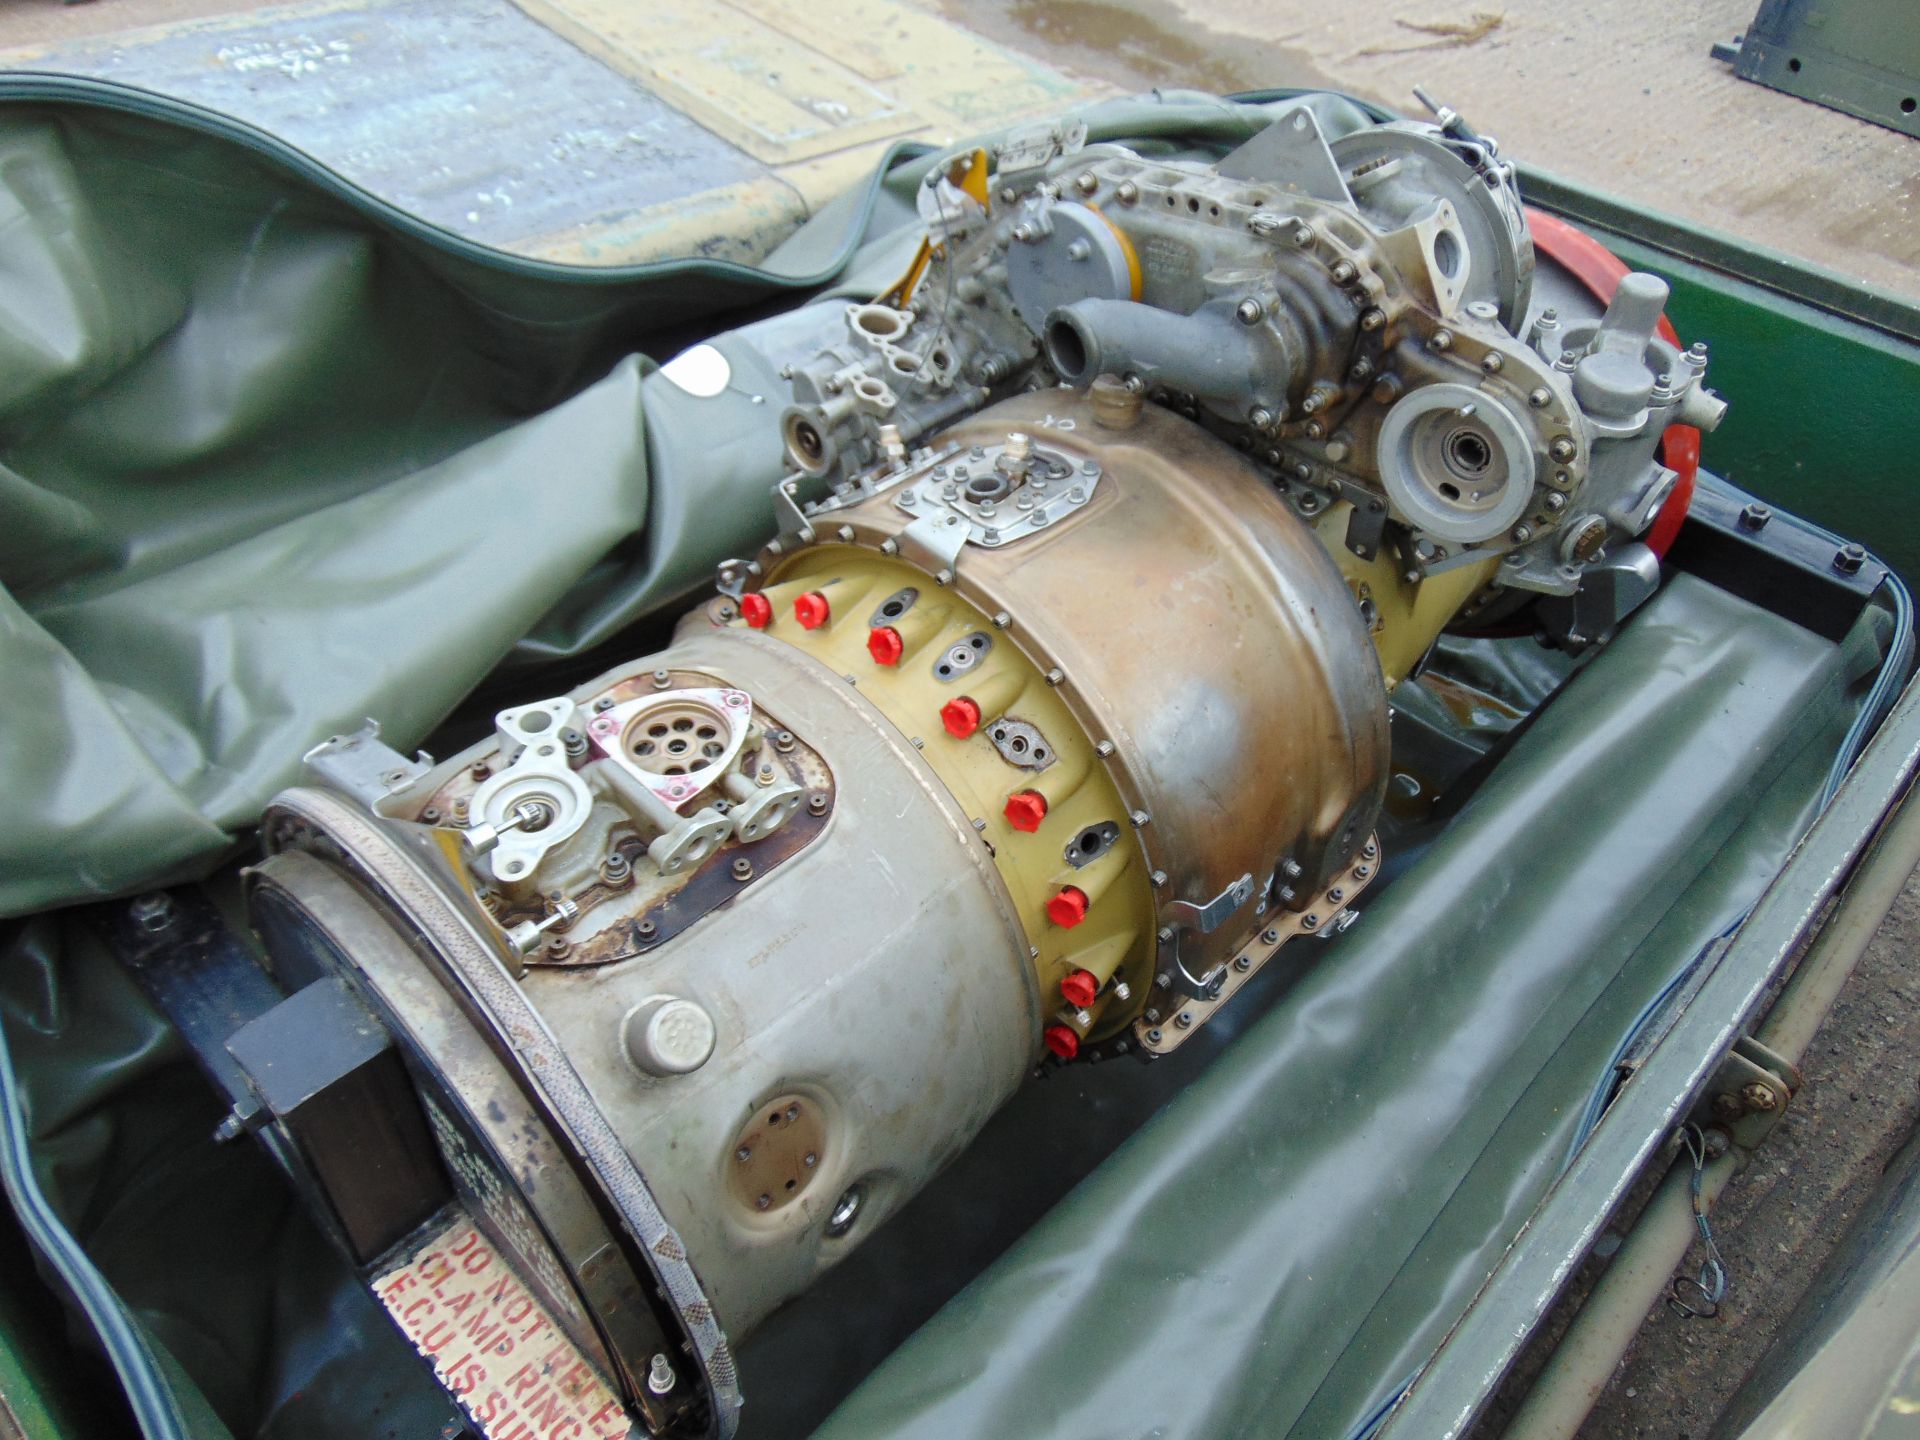 Rolls Royce Gem Jet Engine complete with Transportation Cradle